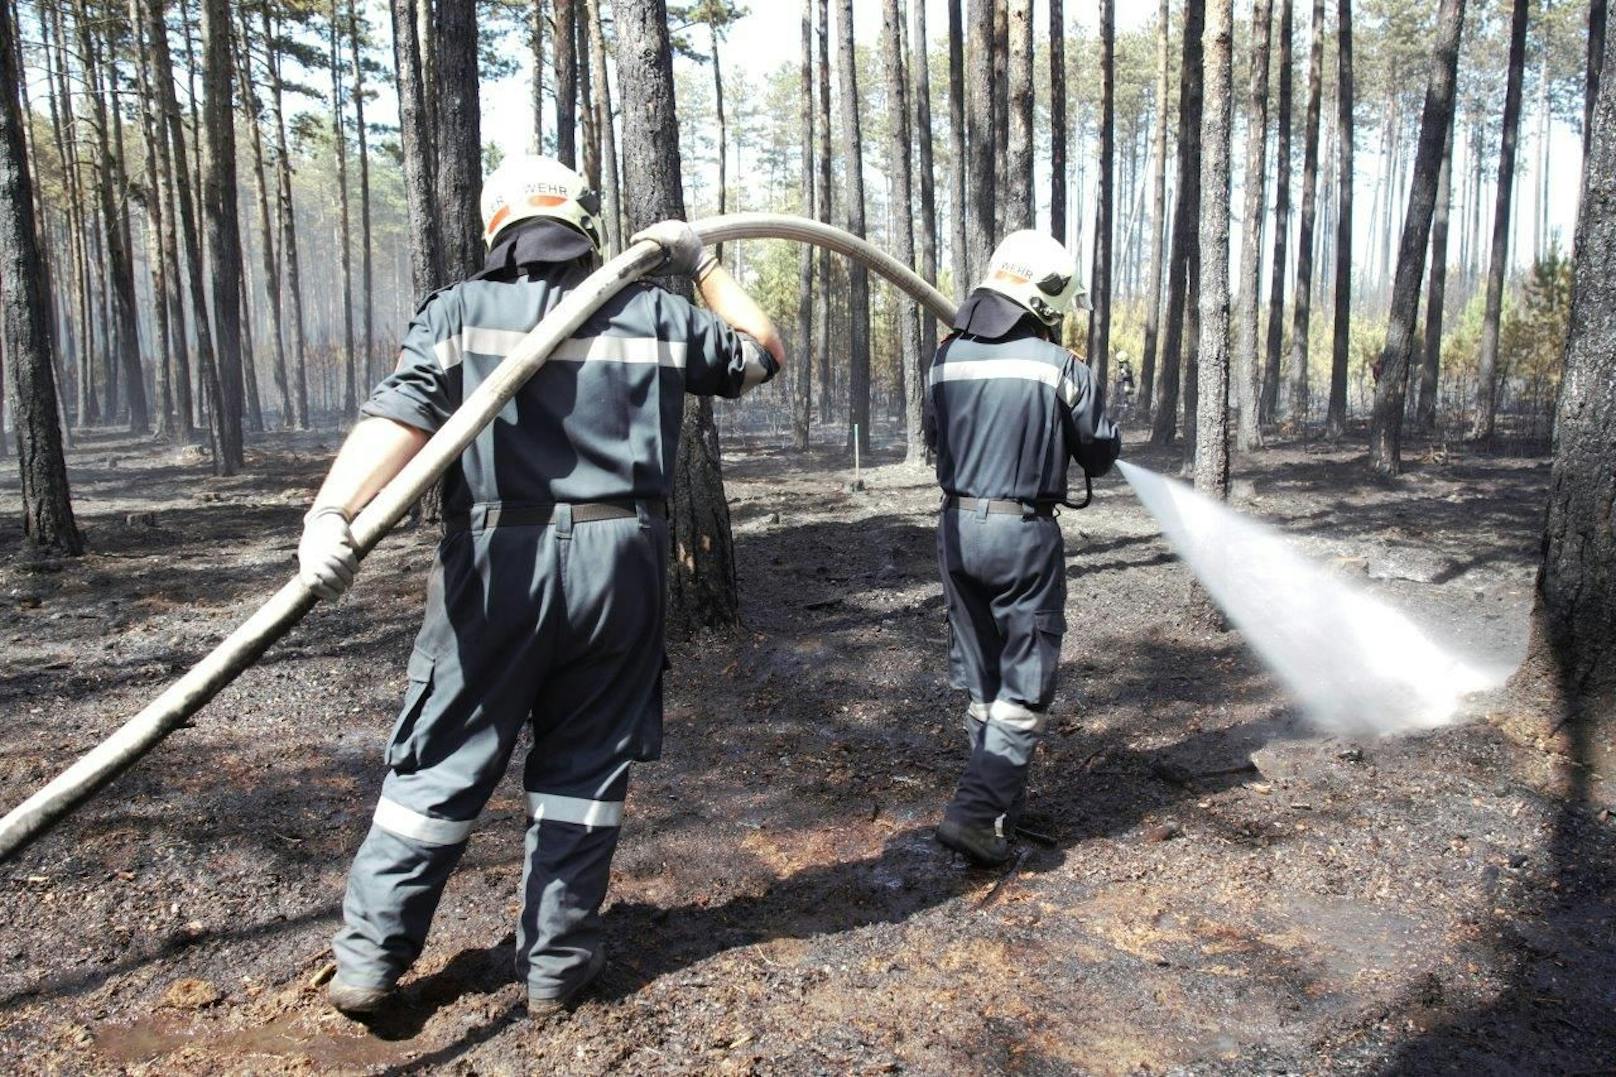 Ein Föhrenwald in St. Egyden brannte.